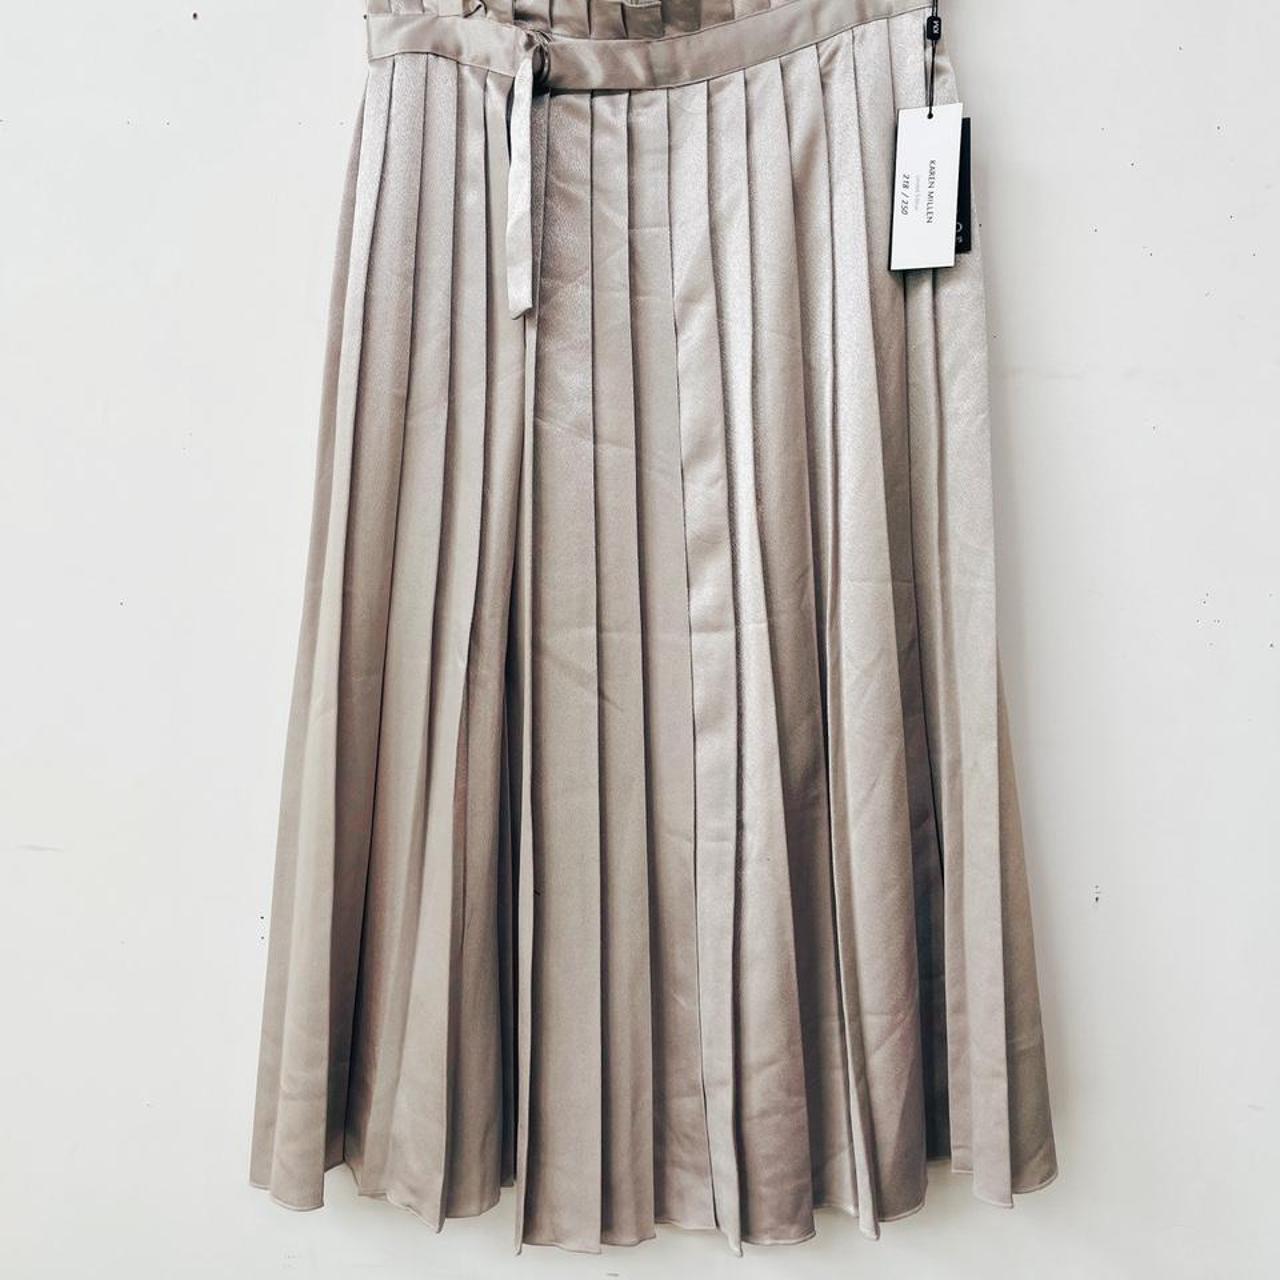 Karen Millen Women's Silver and White Skirt